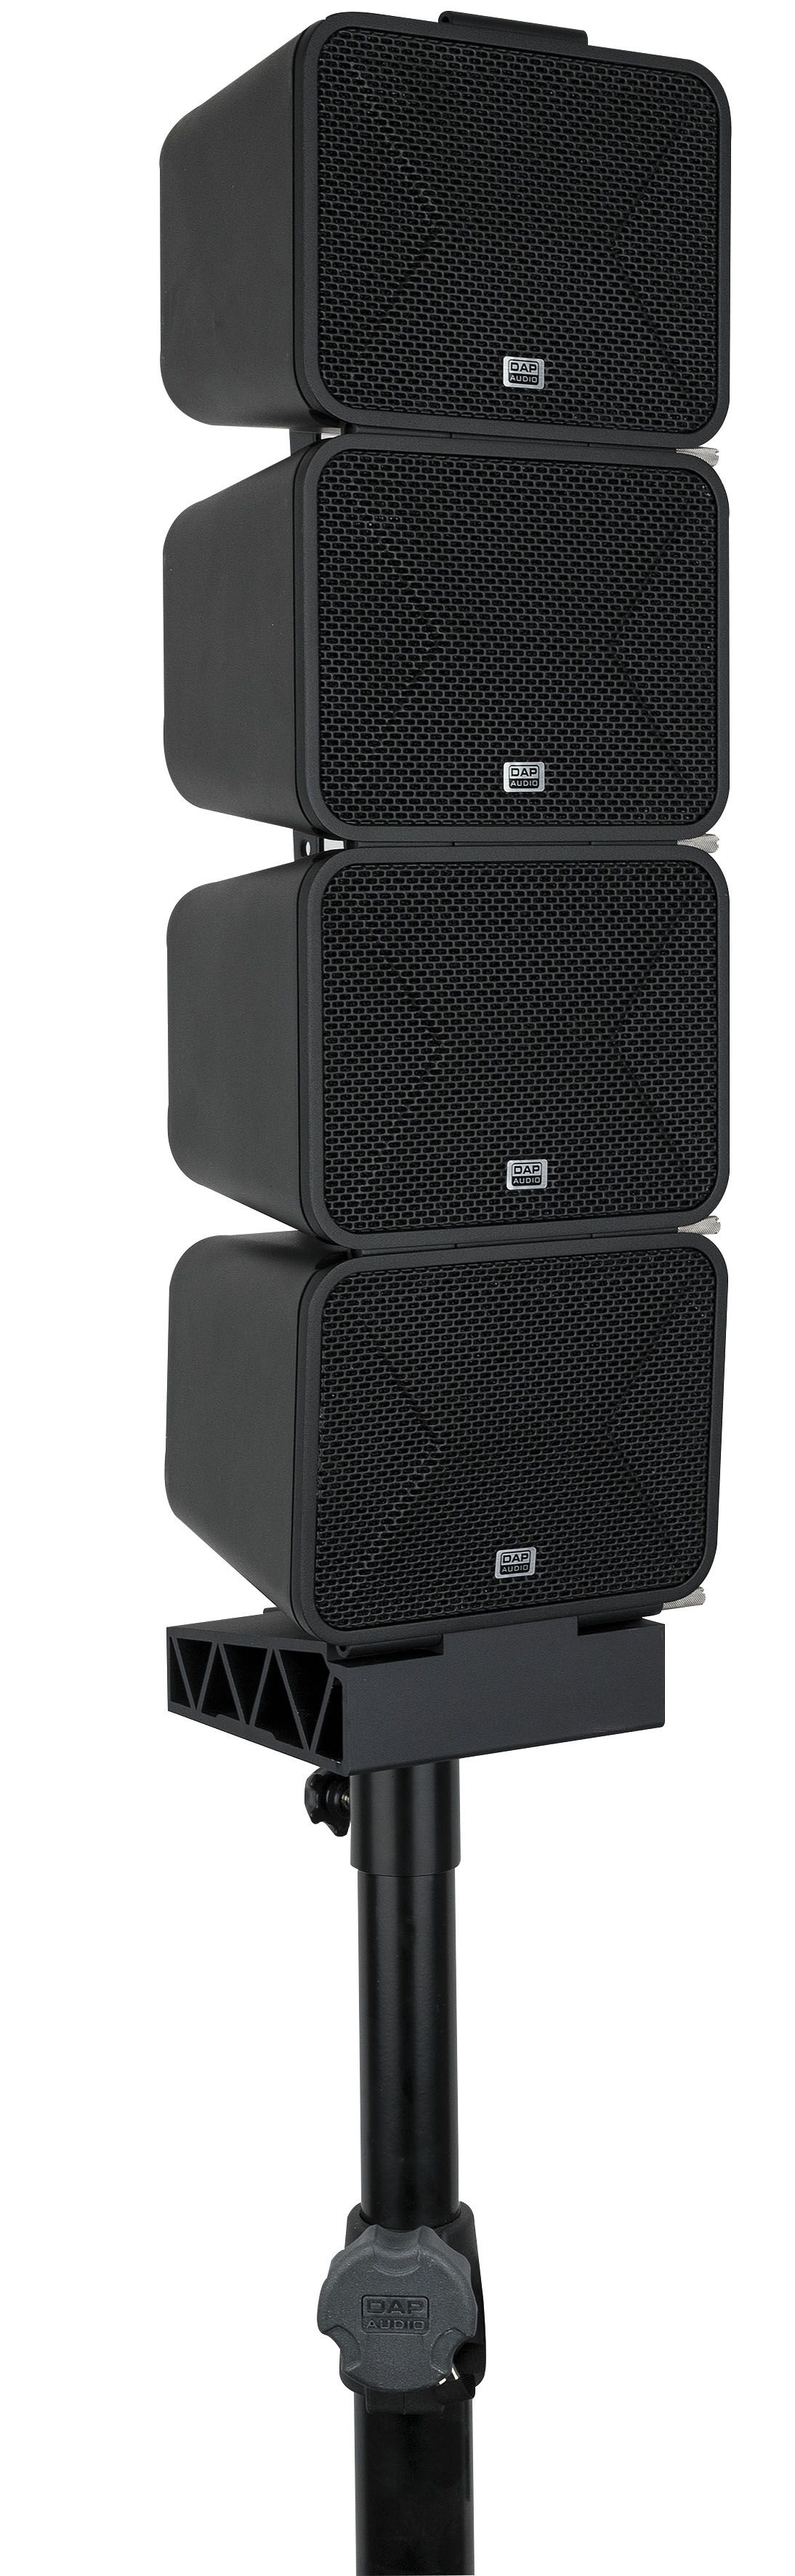 DAP-Audio Mobile Halterung für XI-3 Box schwarz